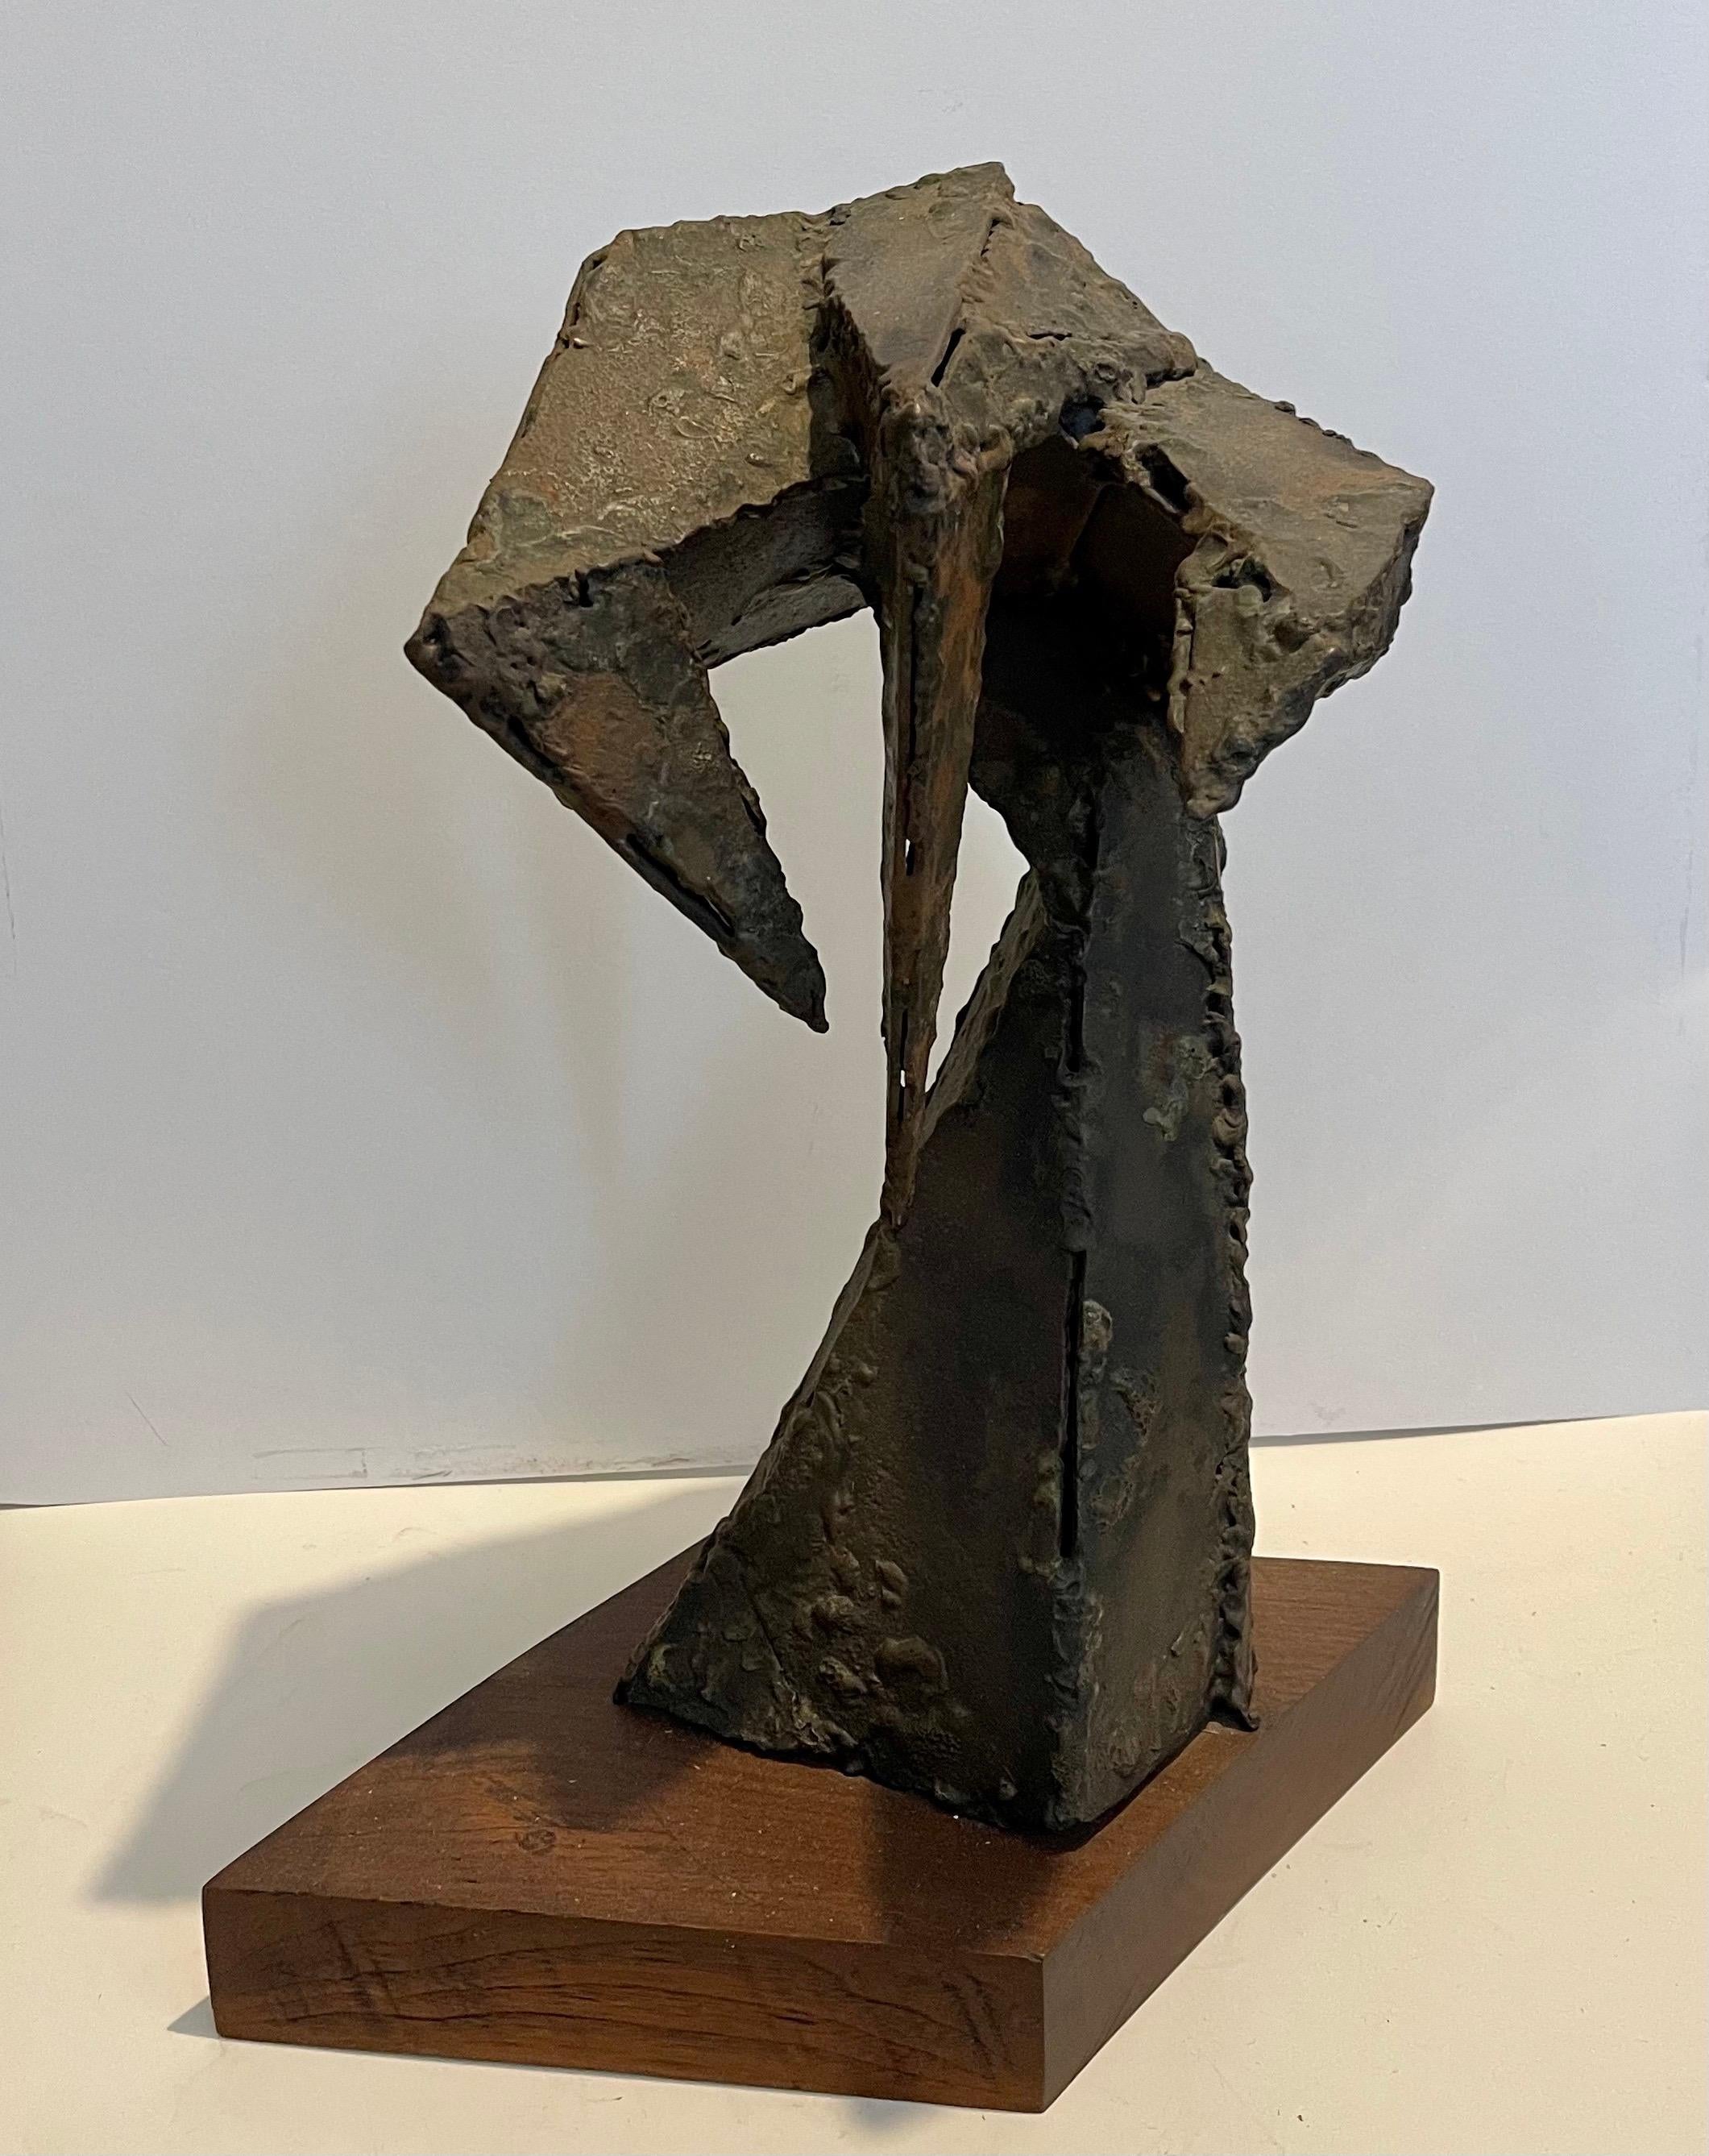 Abstrakt-expressionistische biomorphe geschweißte Metallskulptur, Abstrakt-expressionistische  – Sculpture von Seymour Lipton